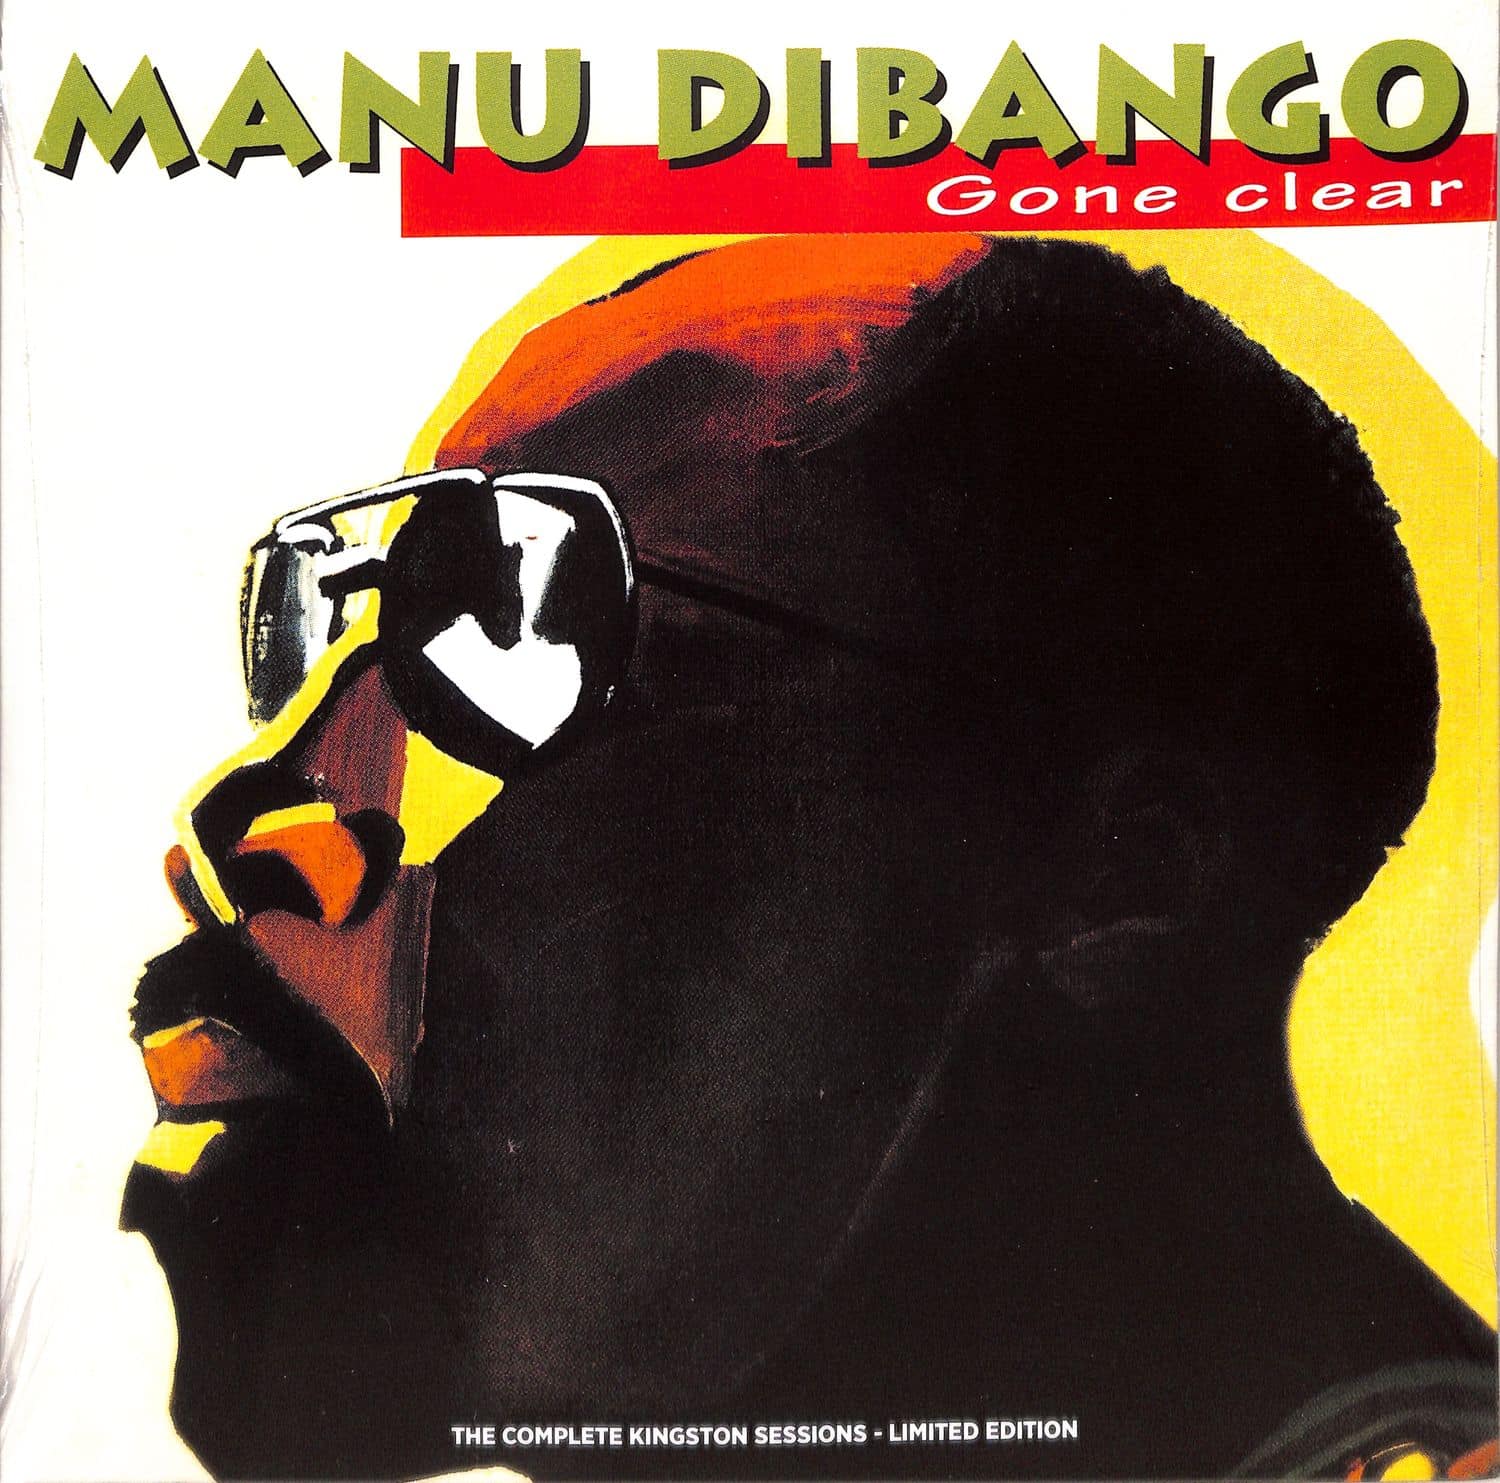 Manu Dibango - GONE CLEAR 